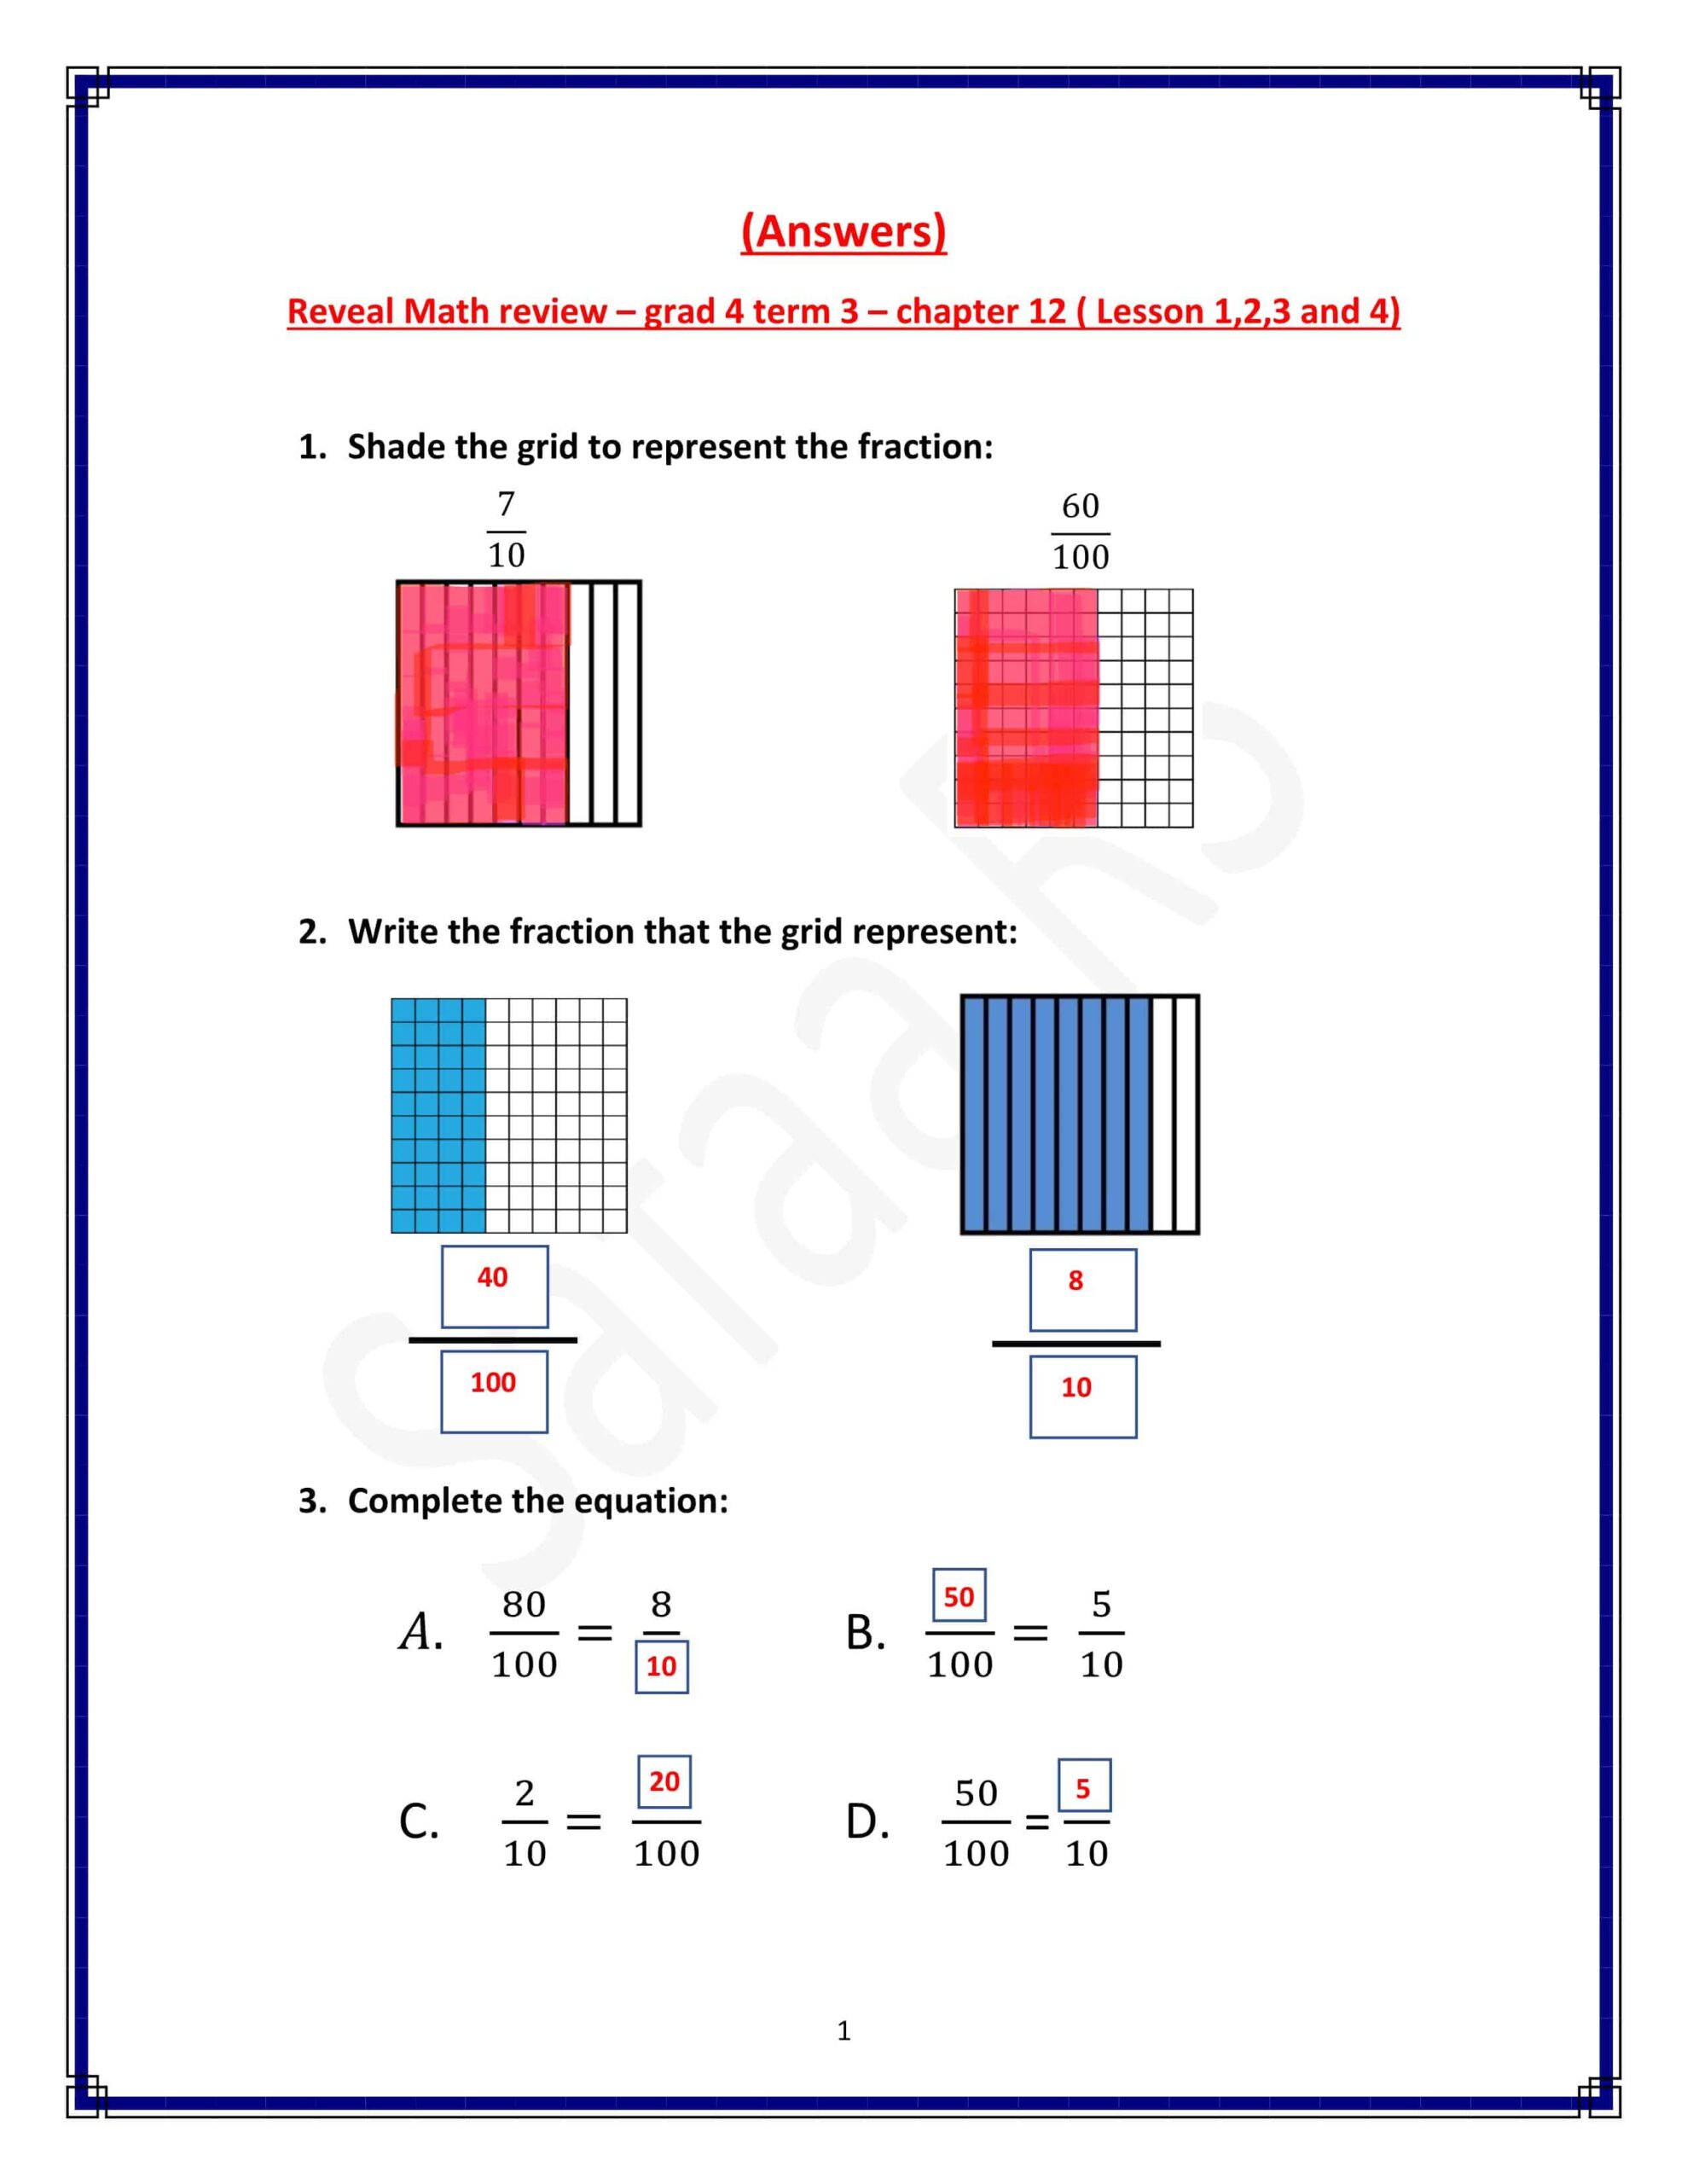 حل أوراق عمل chapter 12 Lesson 1-2-3 and 4 الرياضيات المتكاملة الصف الرابع